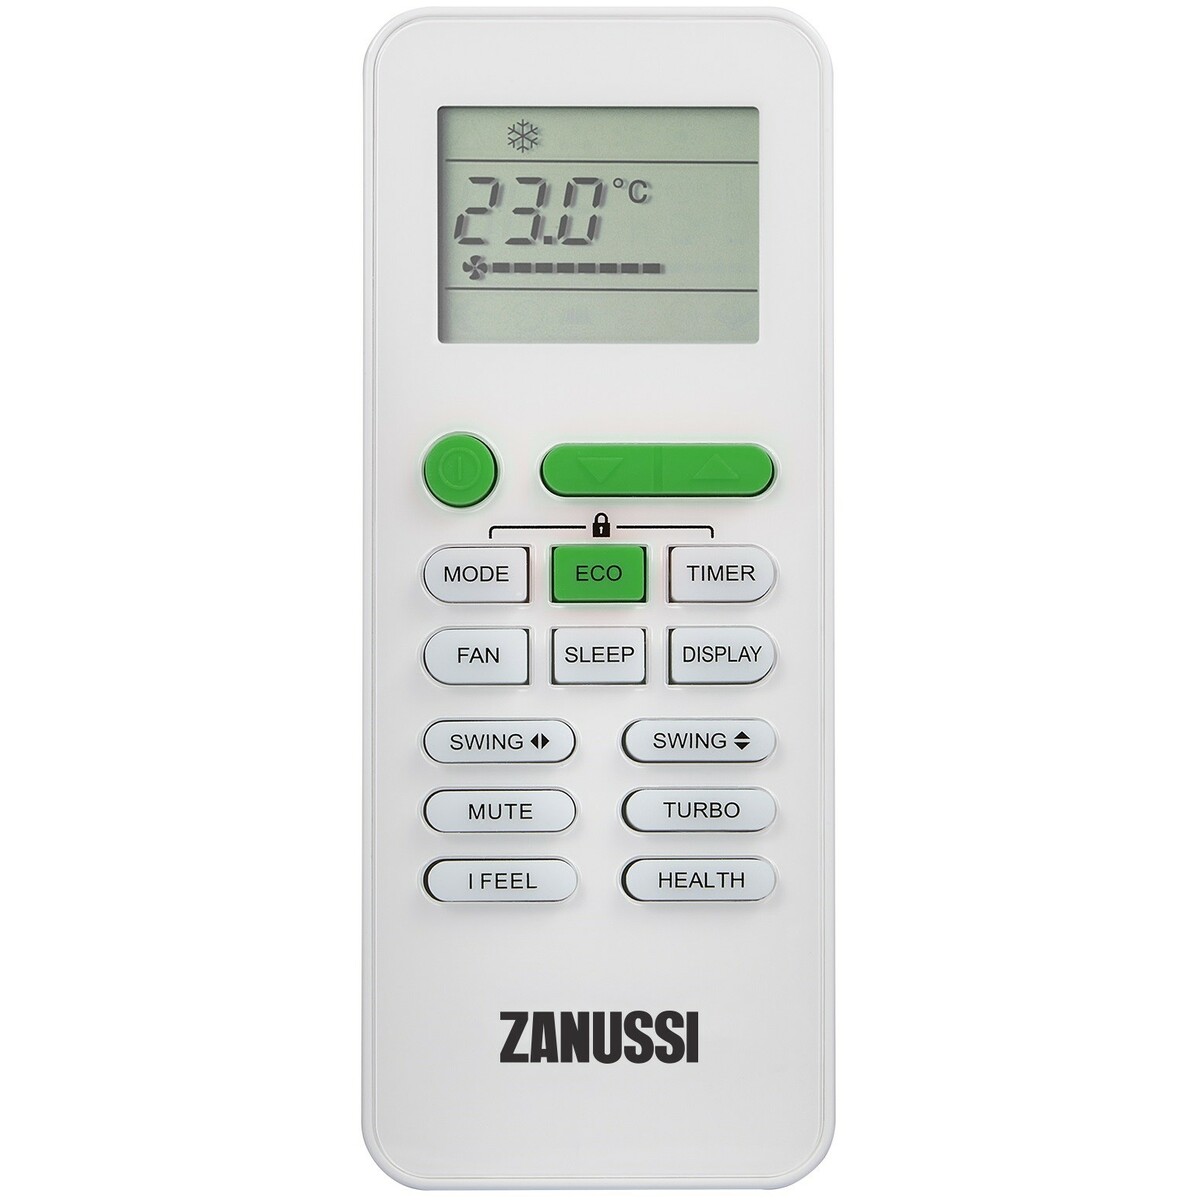 Сплит-система Zanussi ZACS-07 HM/A23/N1, белый